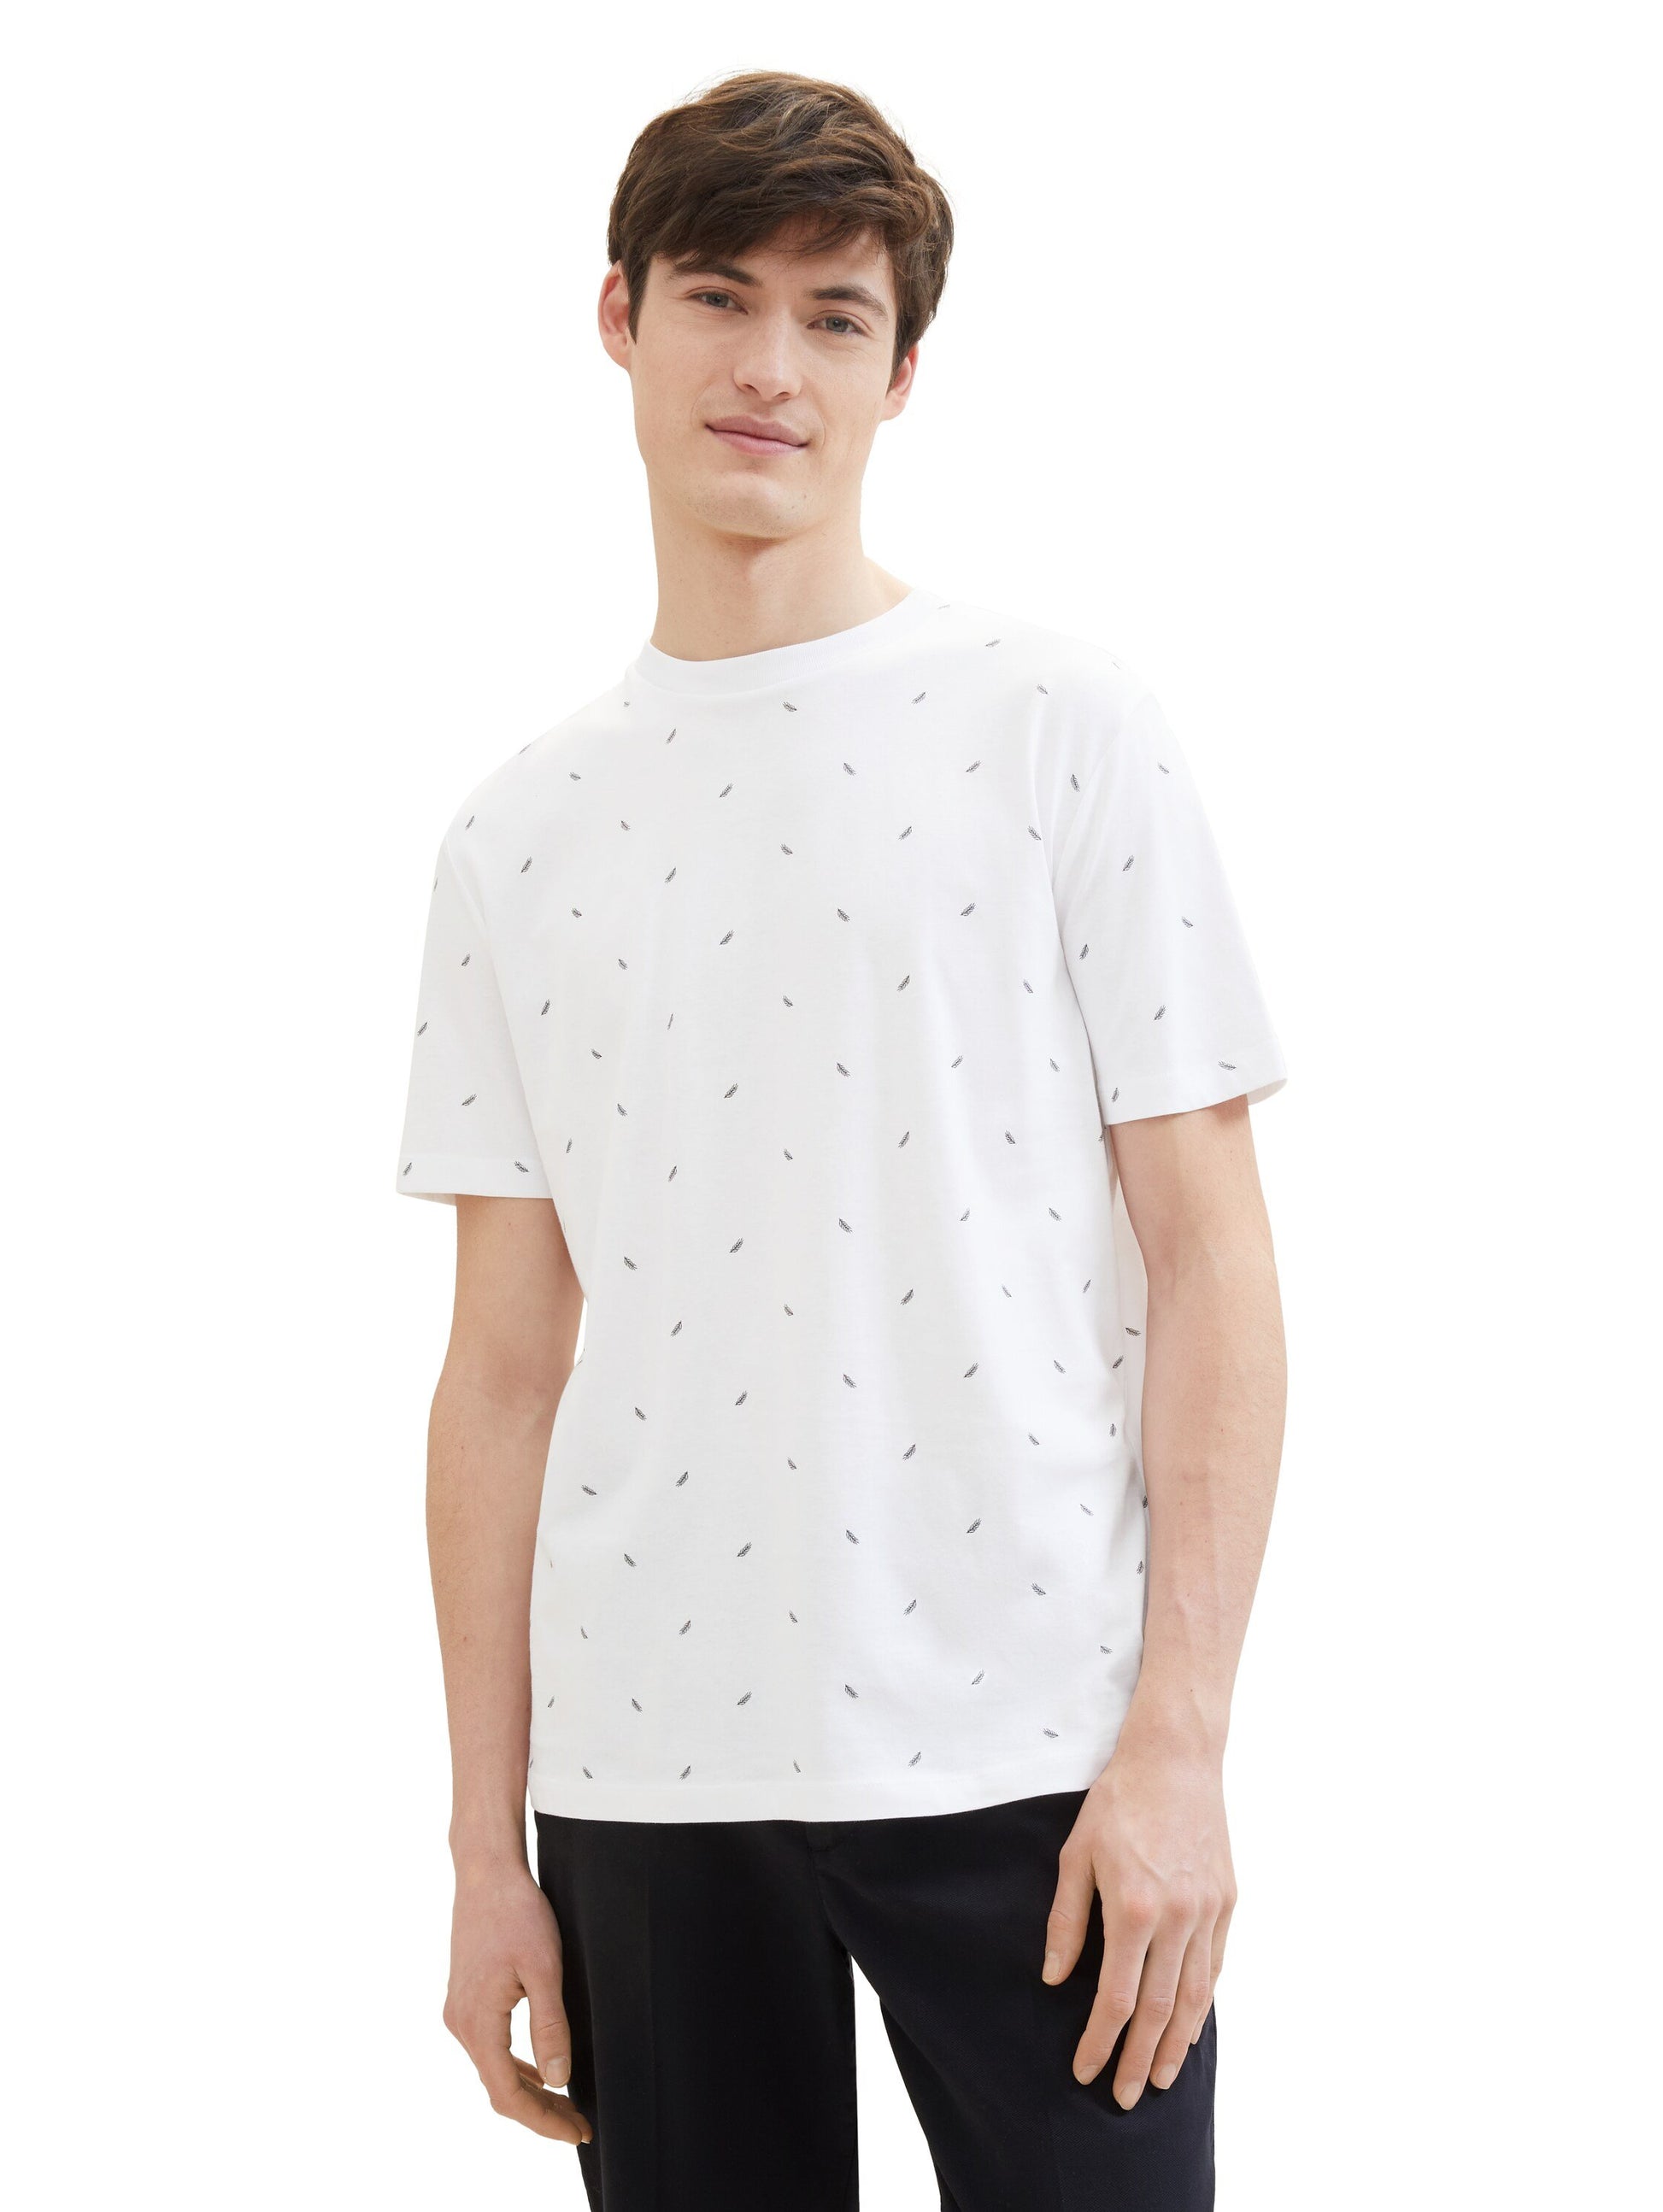 T-Shirt mit Allover Print (White Black Mi)